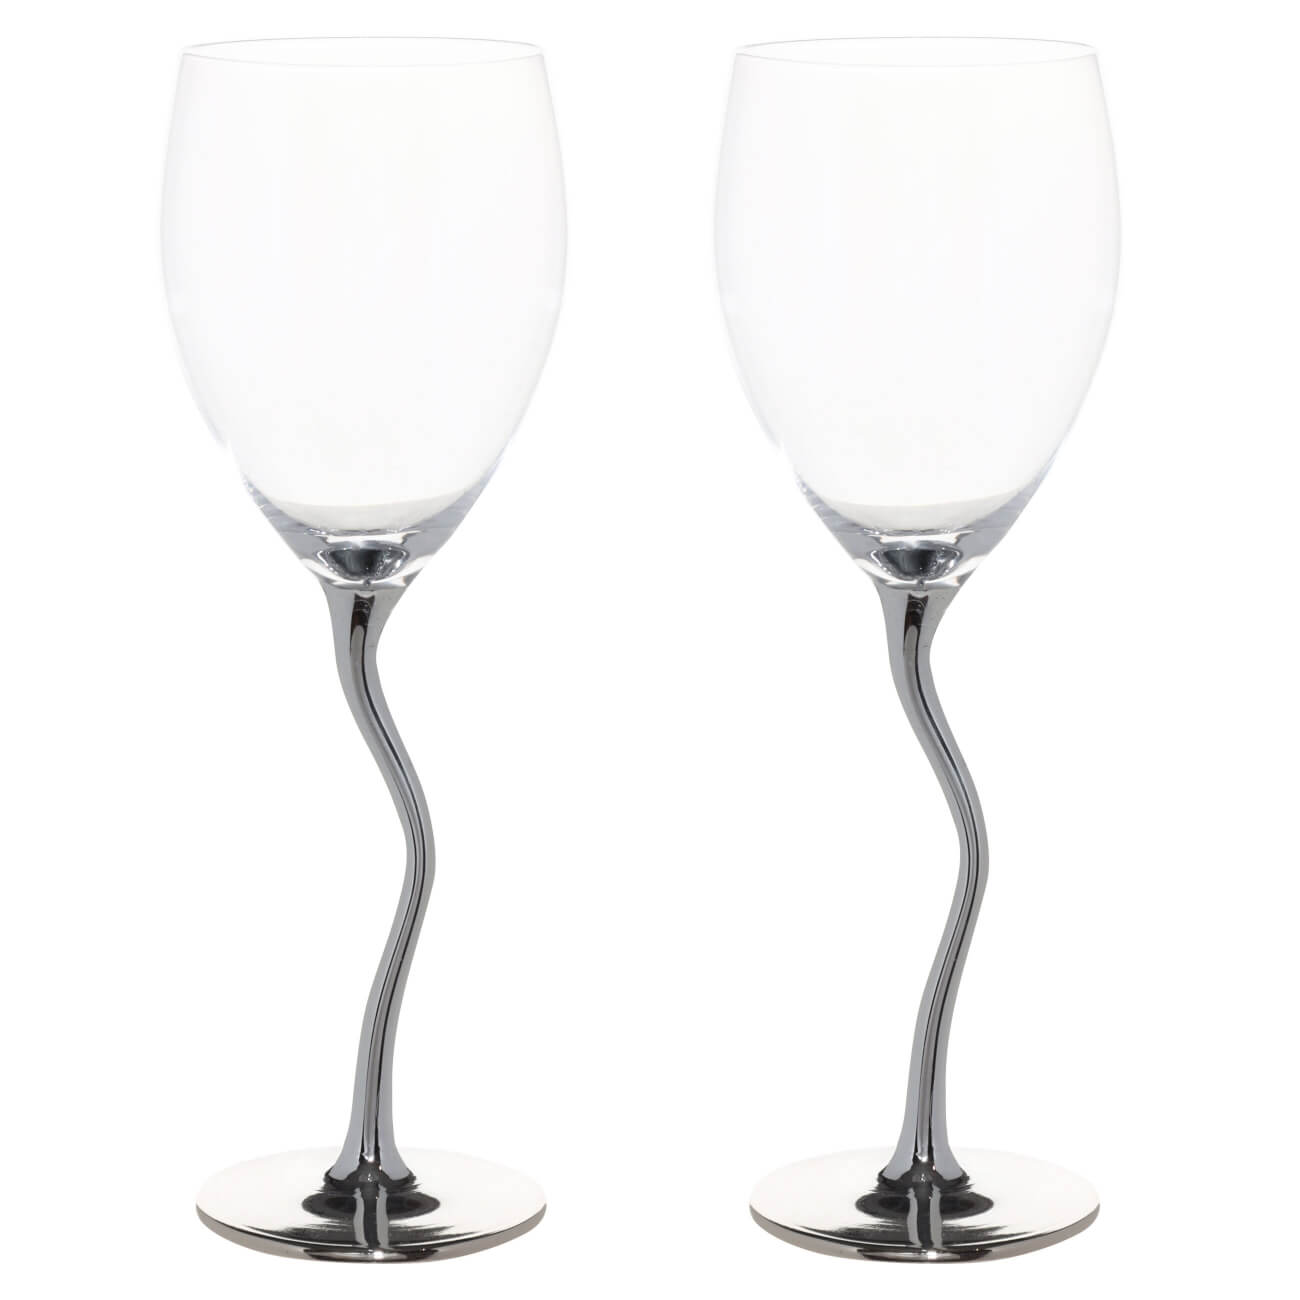 Бокал для вина, 330 мл, 2 шт, стекло, волнистая ножка, серебристый, Benty-color пивной бокал